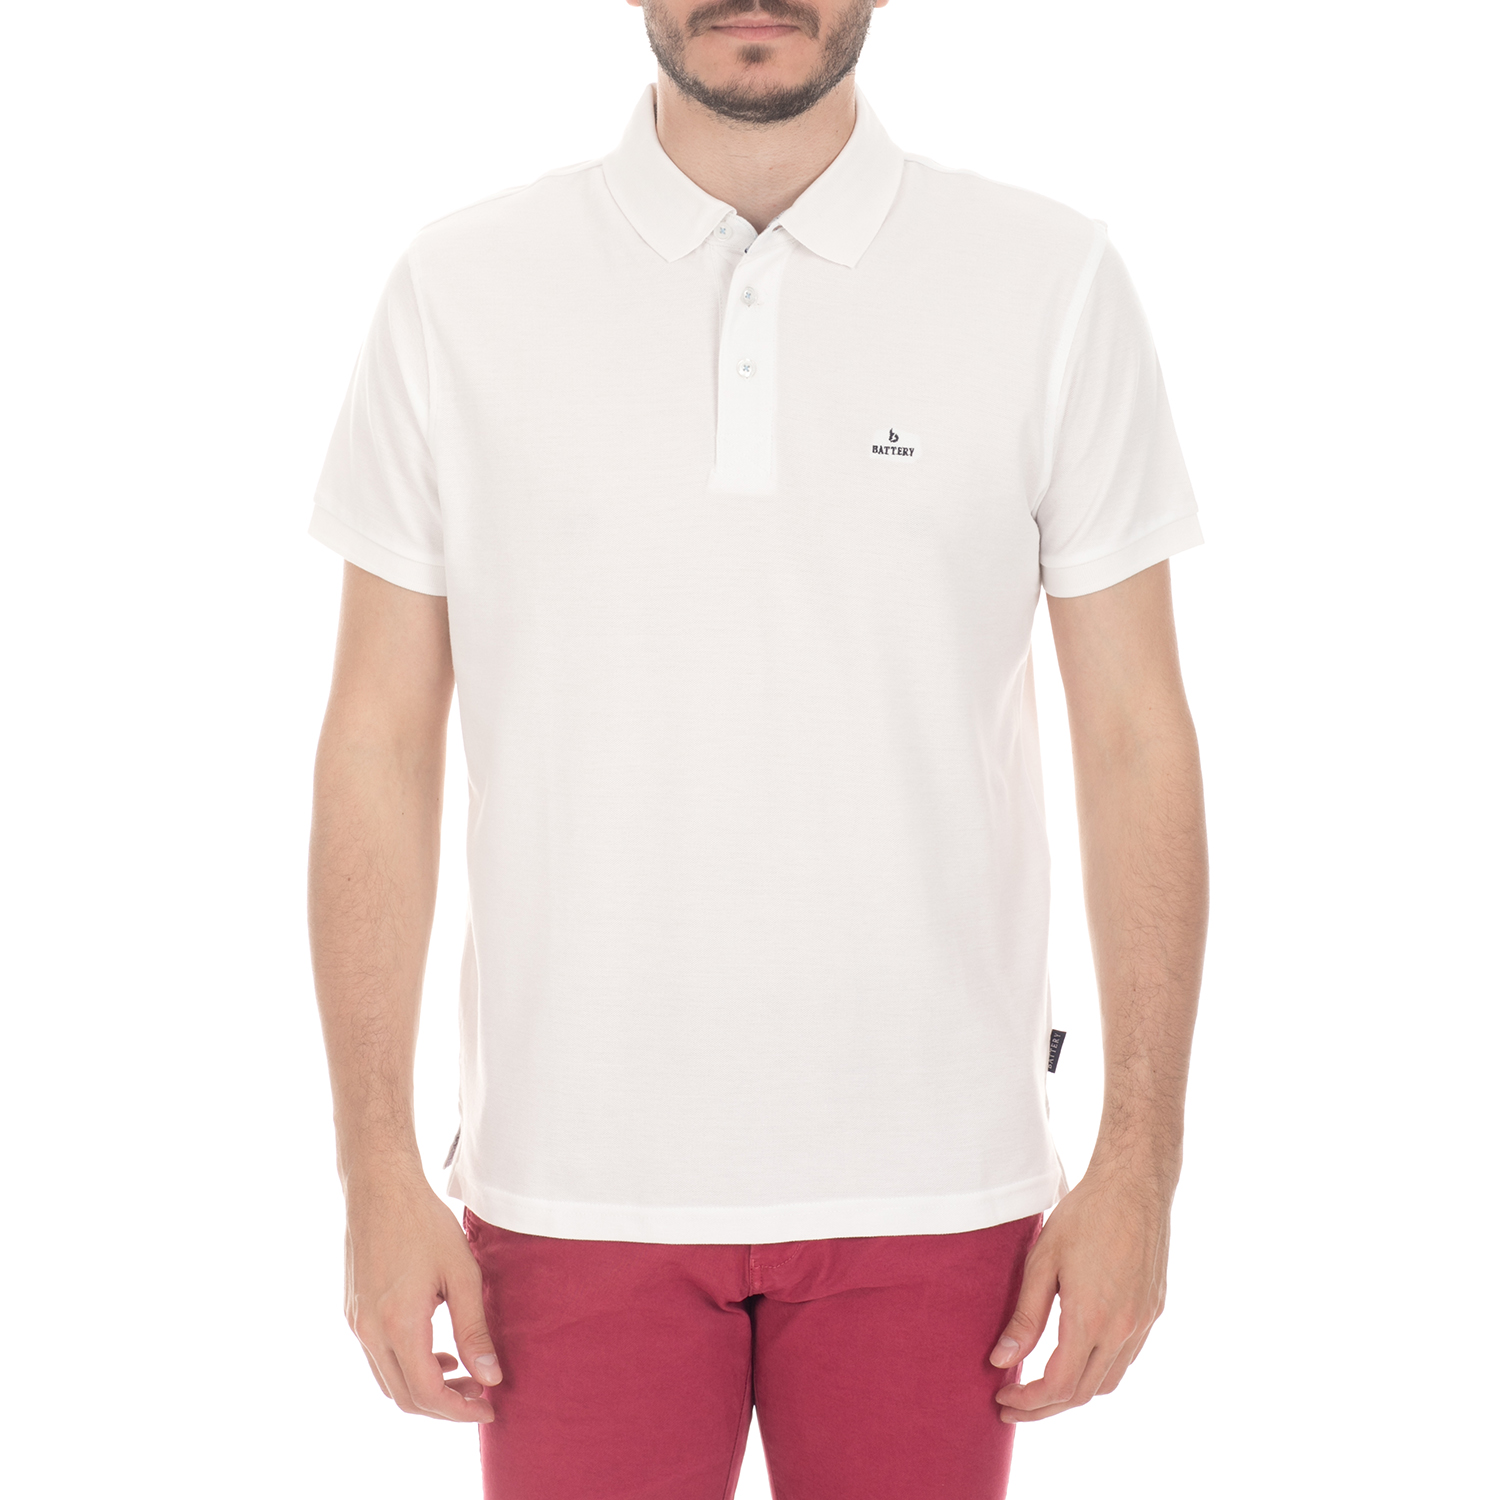 BATTERY - Ανδρική μπλούζα BATTERY λευκή Ανδρικά/Ρούχα/Μπλούζες/Πόλο